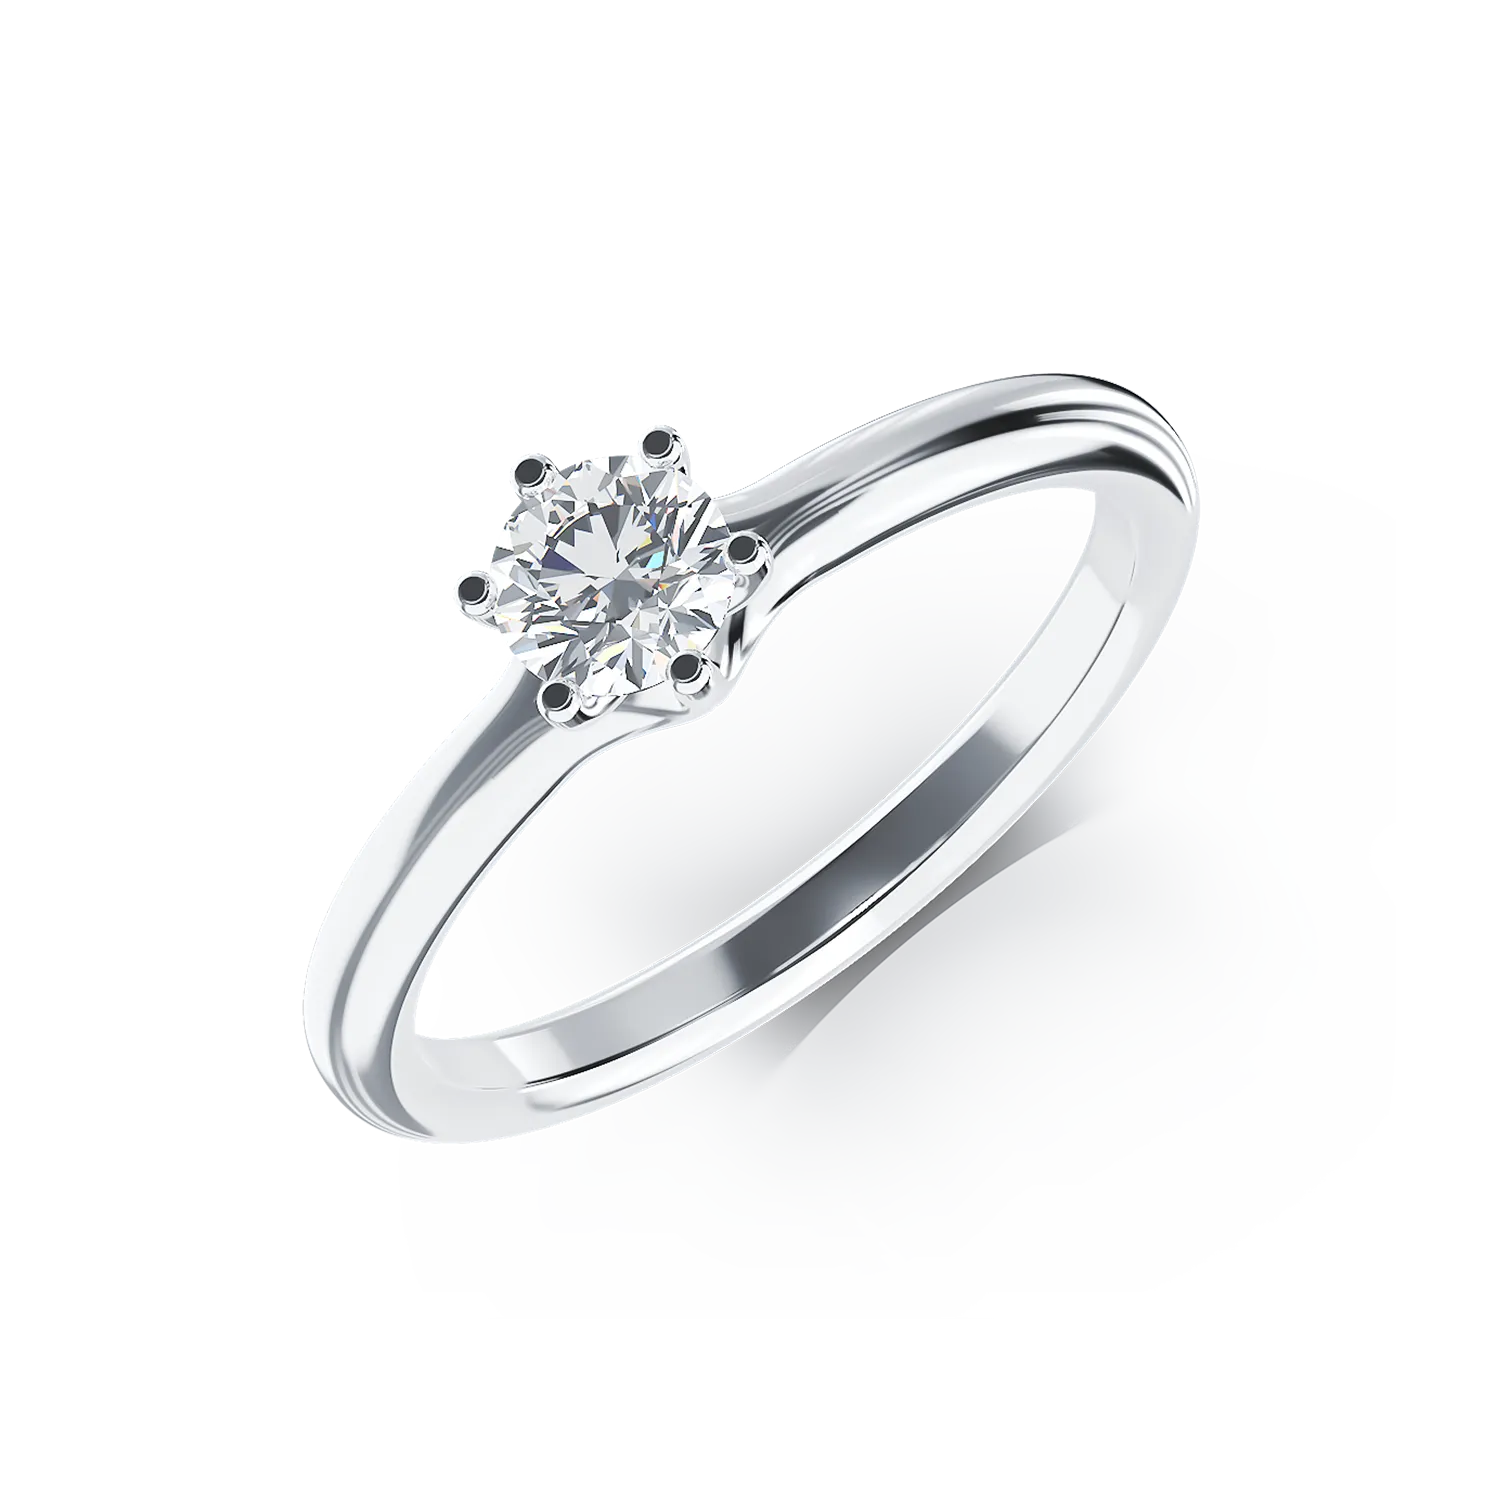 Eljegyzési gyűrű 18K-os fehér aranyból 0,305ct gyémánttal. Gramm: 2,29